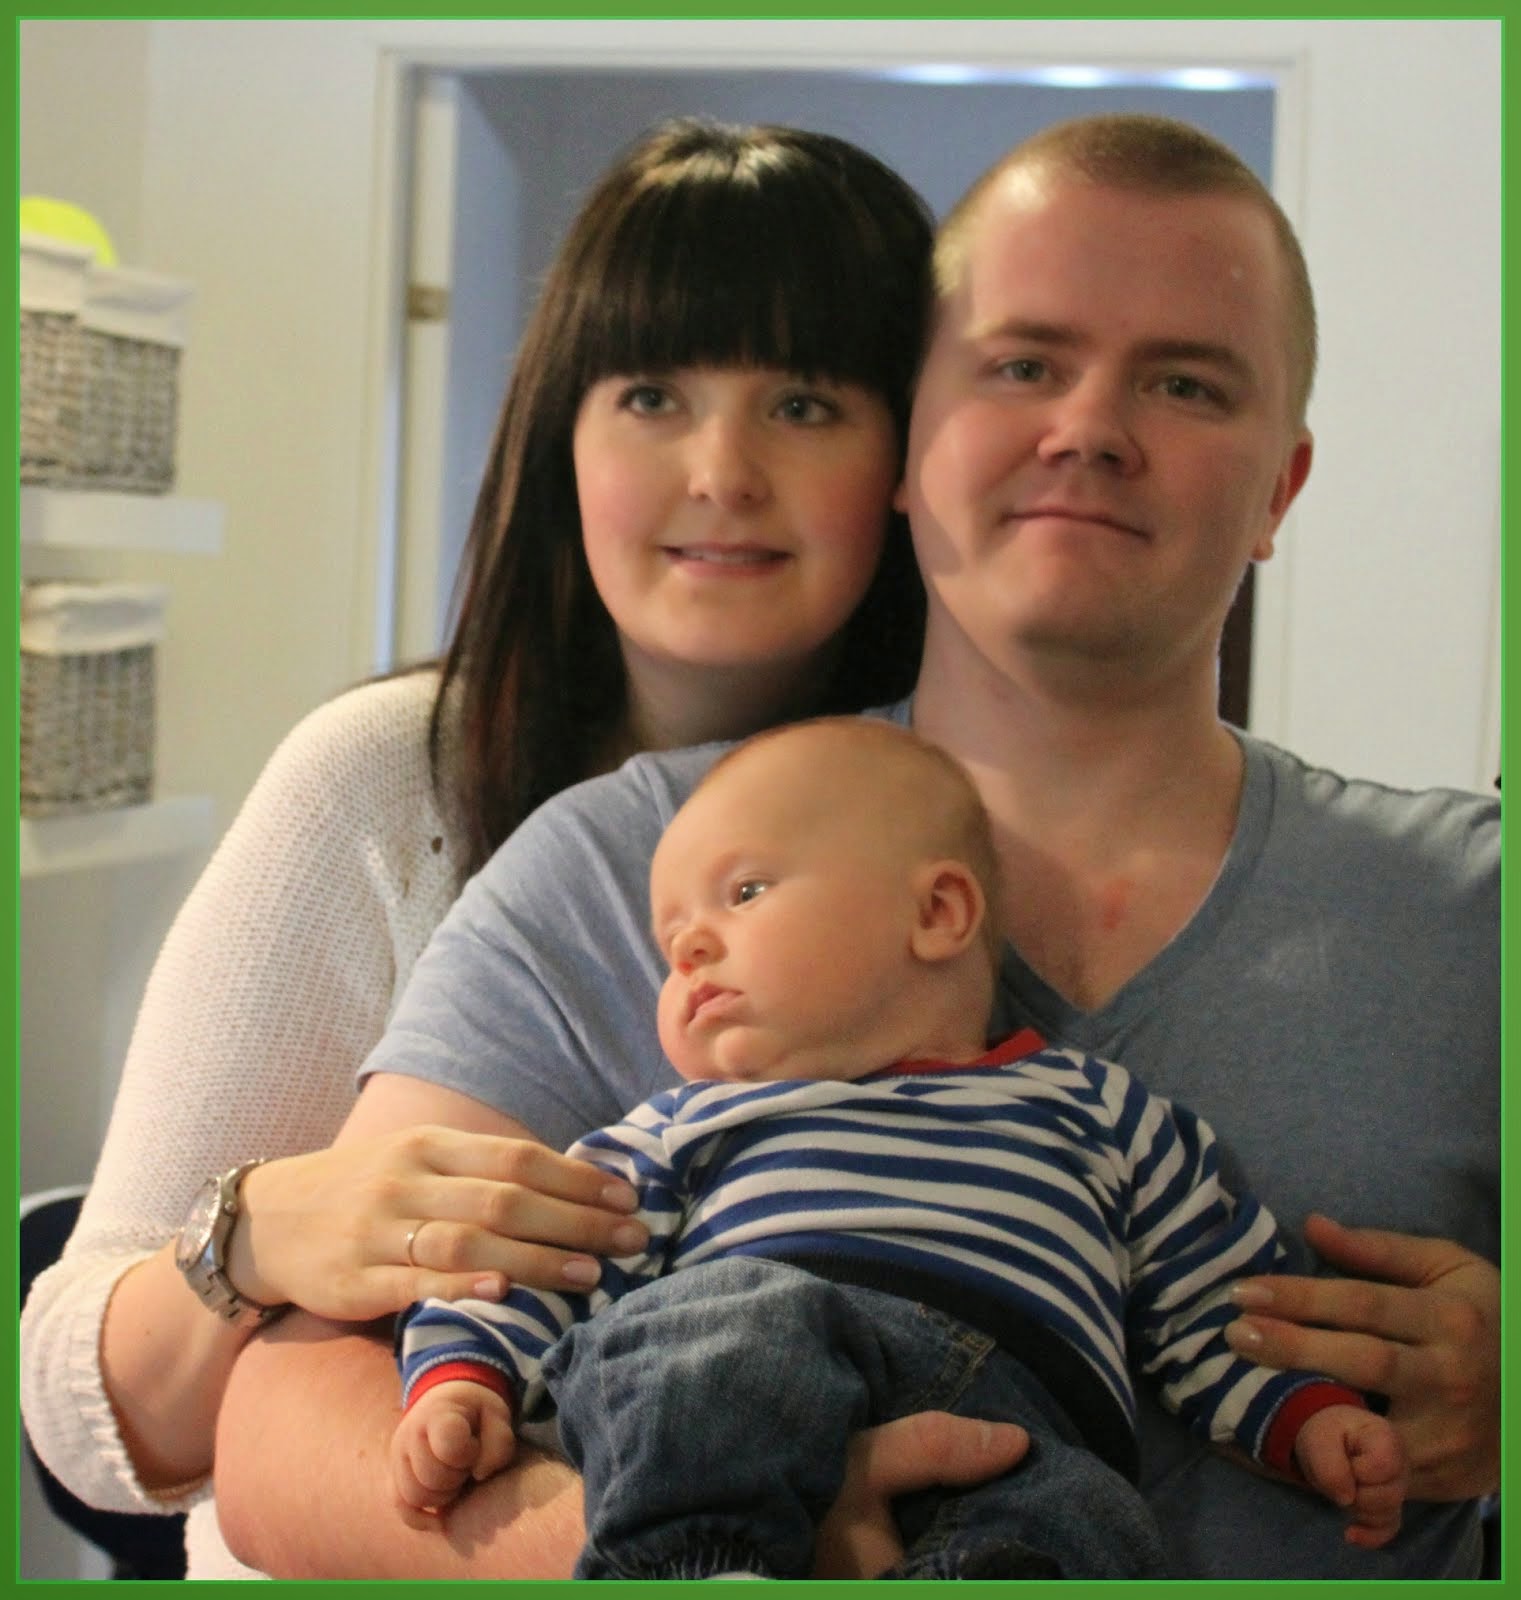 En blogg om mitt liv och familj. Jag är 28 år och mammaledig. Mattis kom till världen 9/2014.